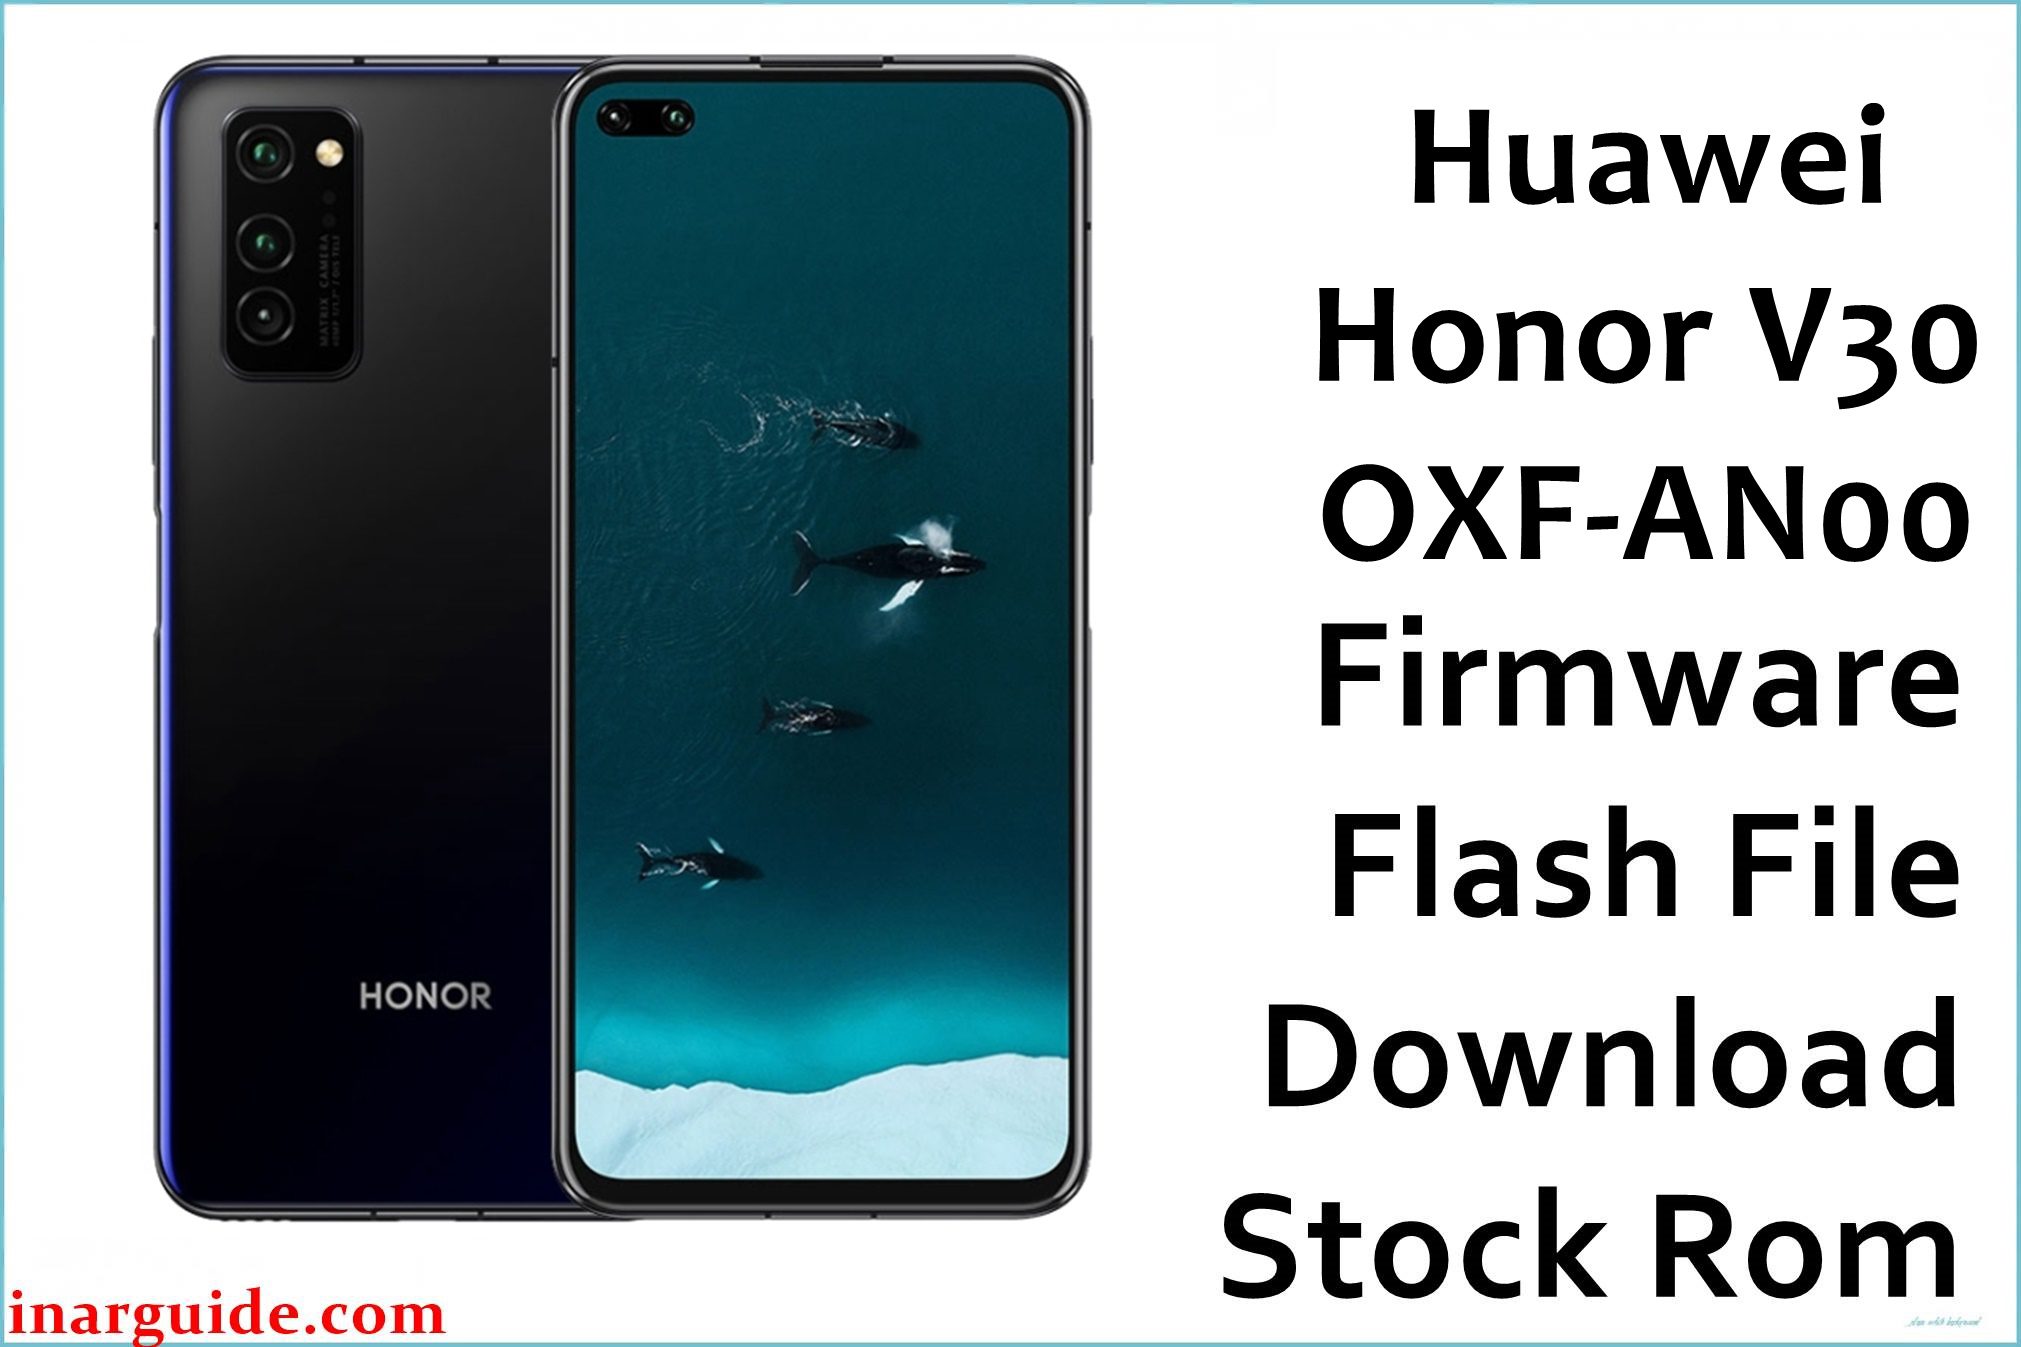 Huawei Honor V30 OXF AN00